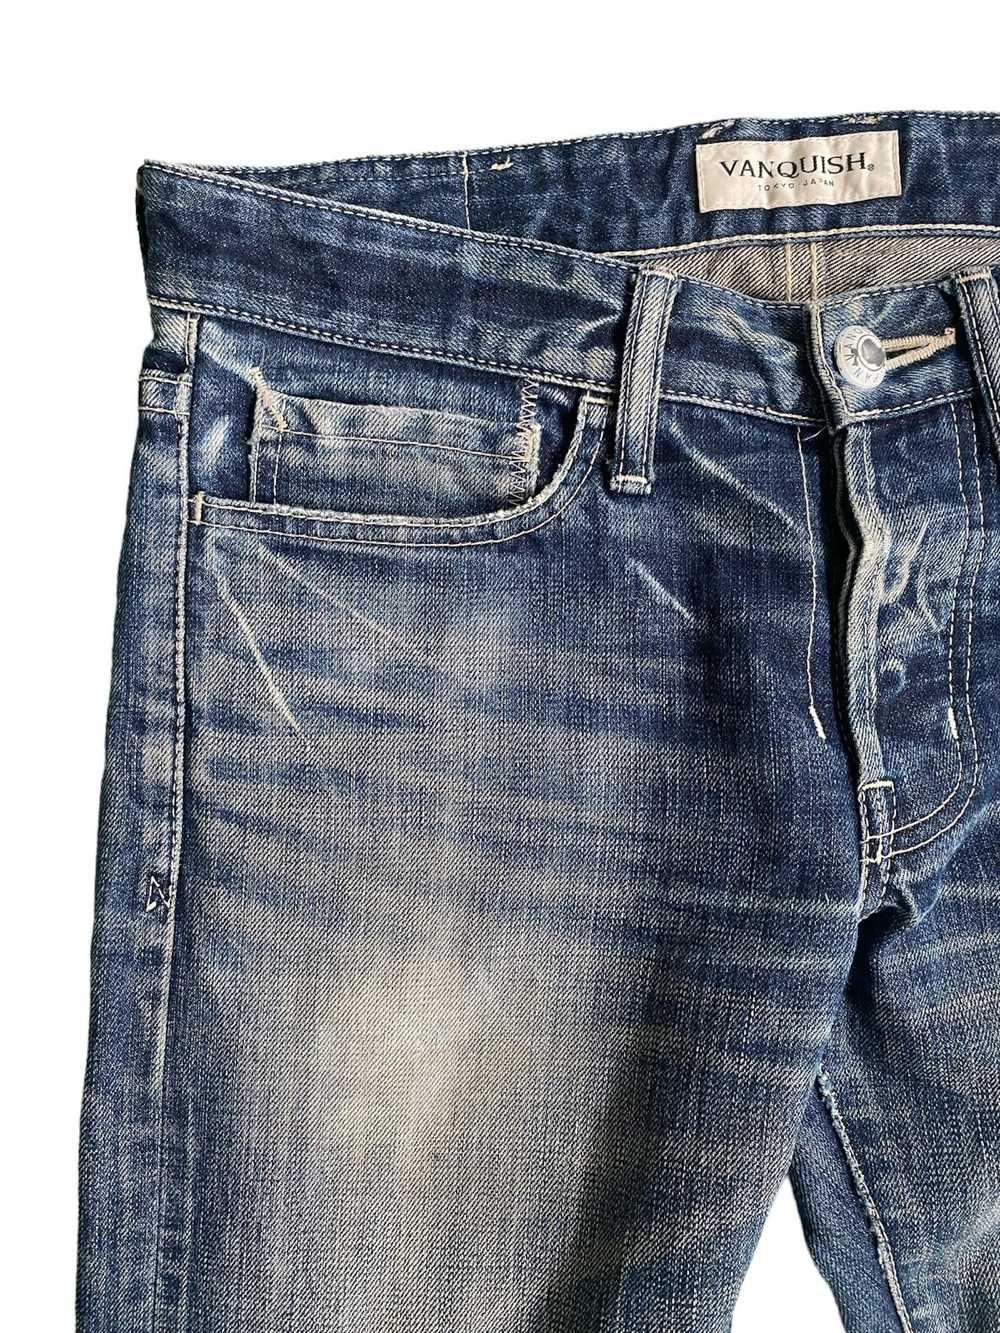 Vanquish Vanquish Distressed Jeans - image 7